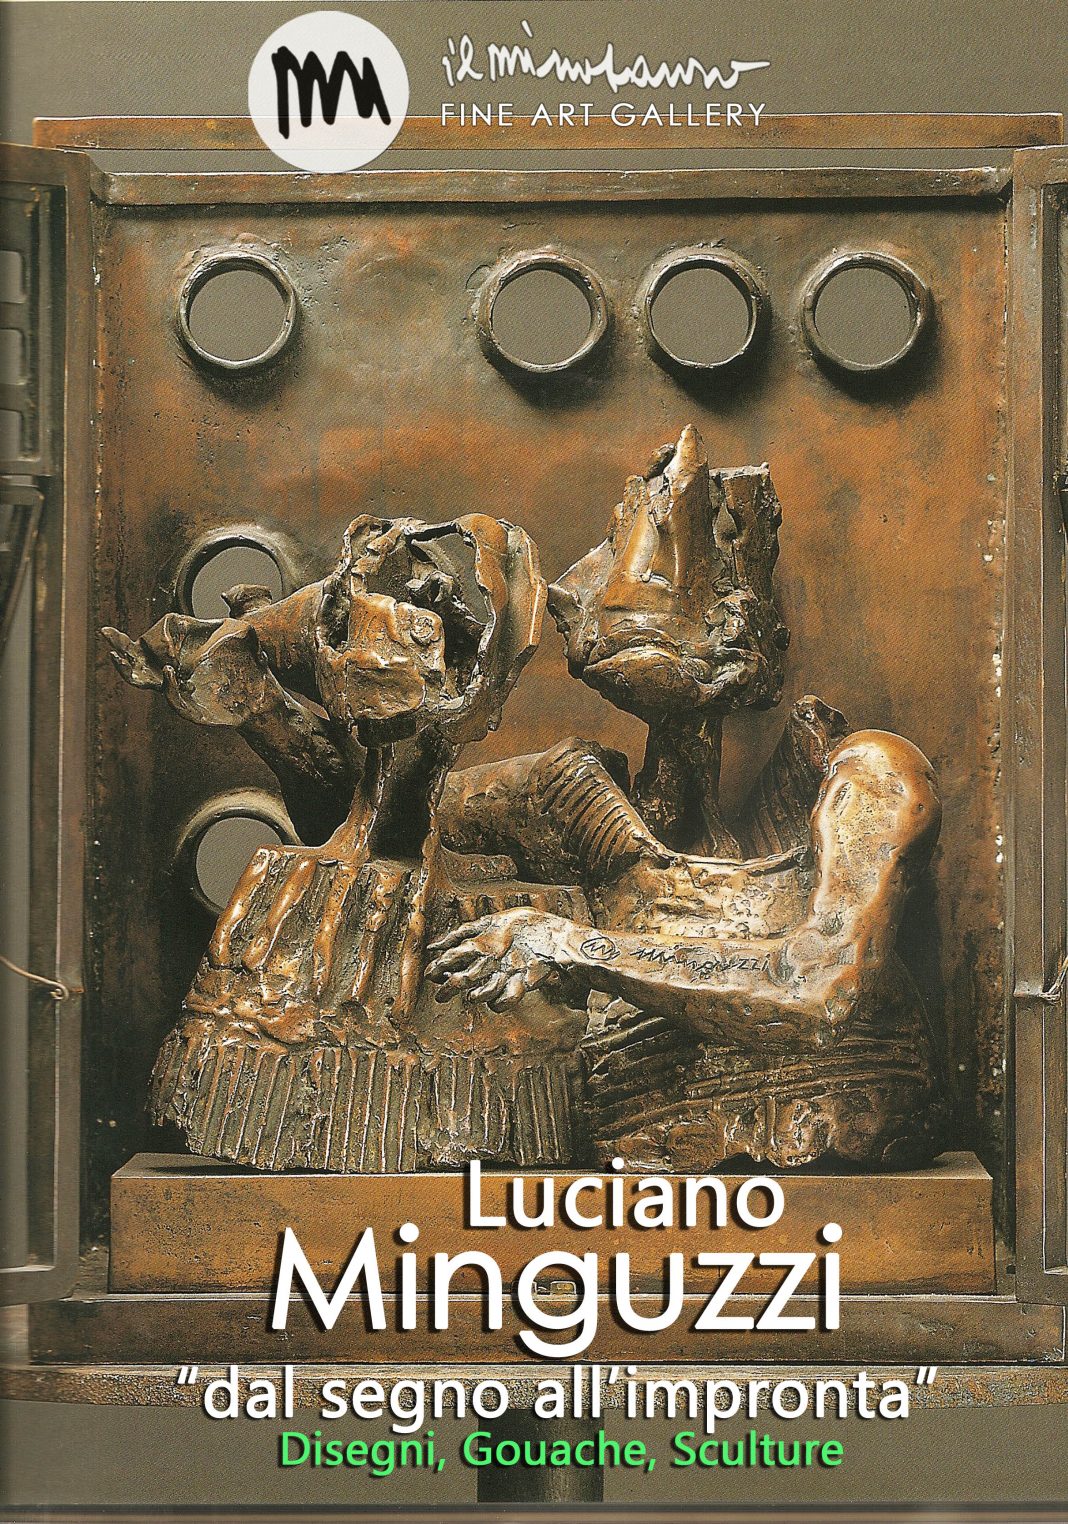 Luciano Minguzzi – Dal segno all’improntahttps://www.exibart.com/repository/media/eventi/2013/05/luciano-minguzzi-8211-dal-segno-all8217impronta-1068x1524.jpg